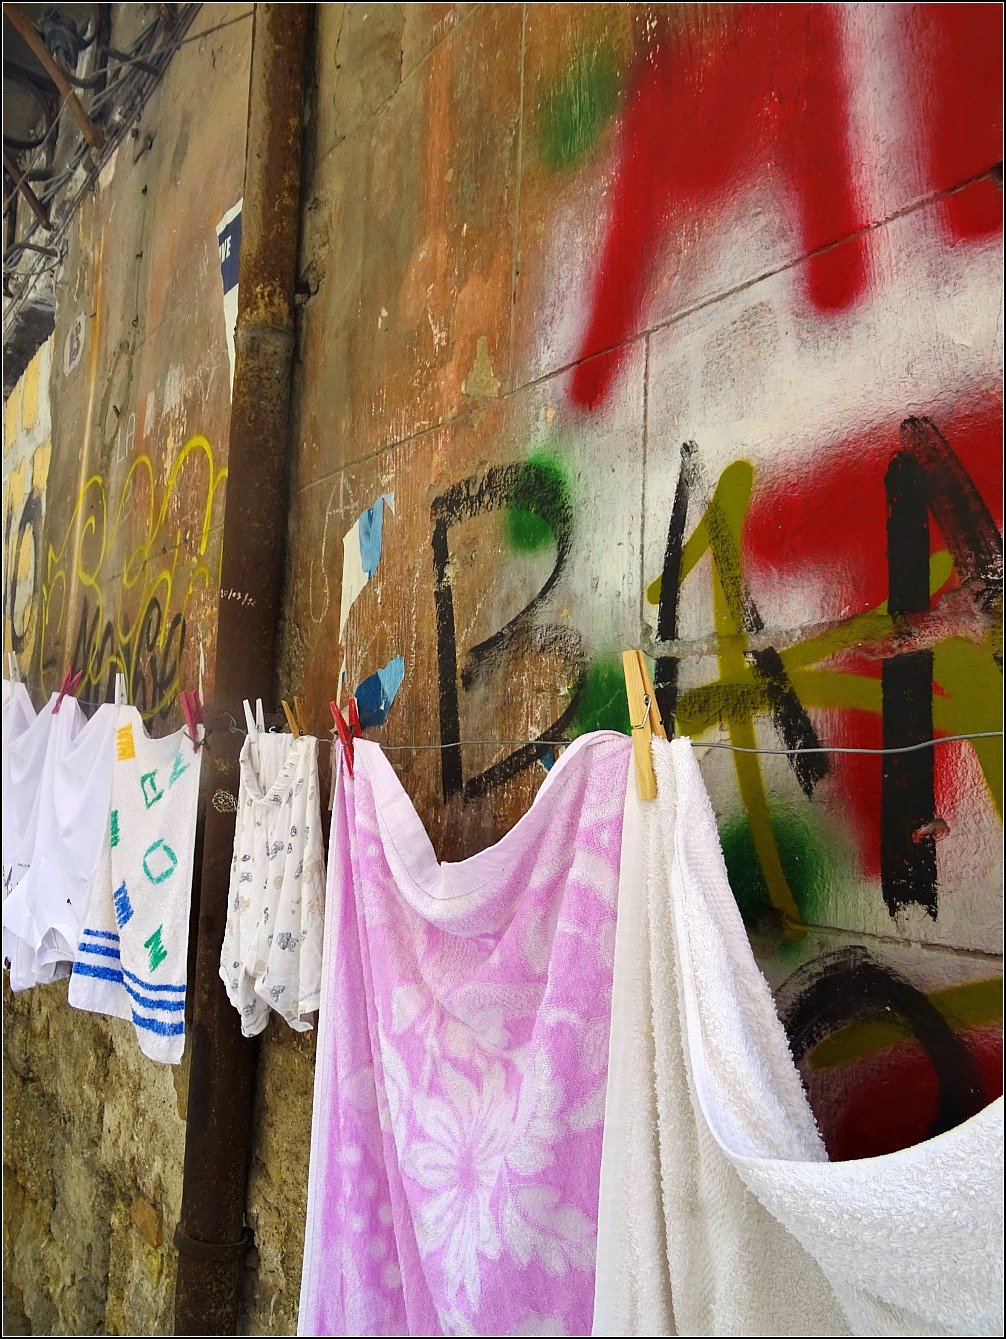 Palermo Walls and Washing